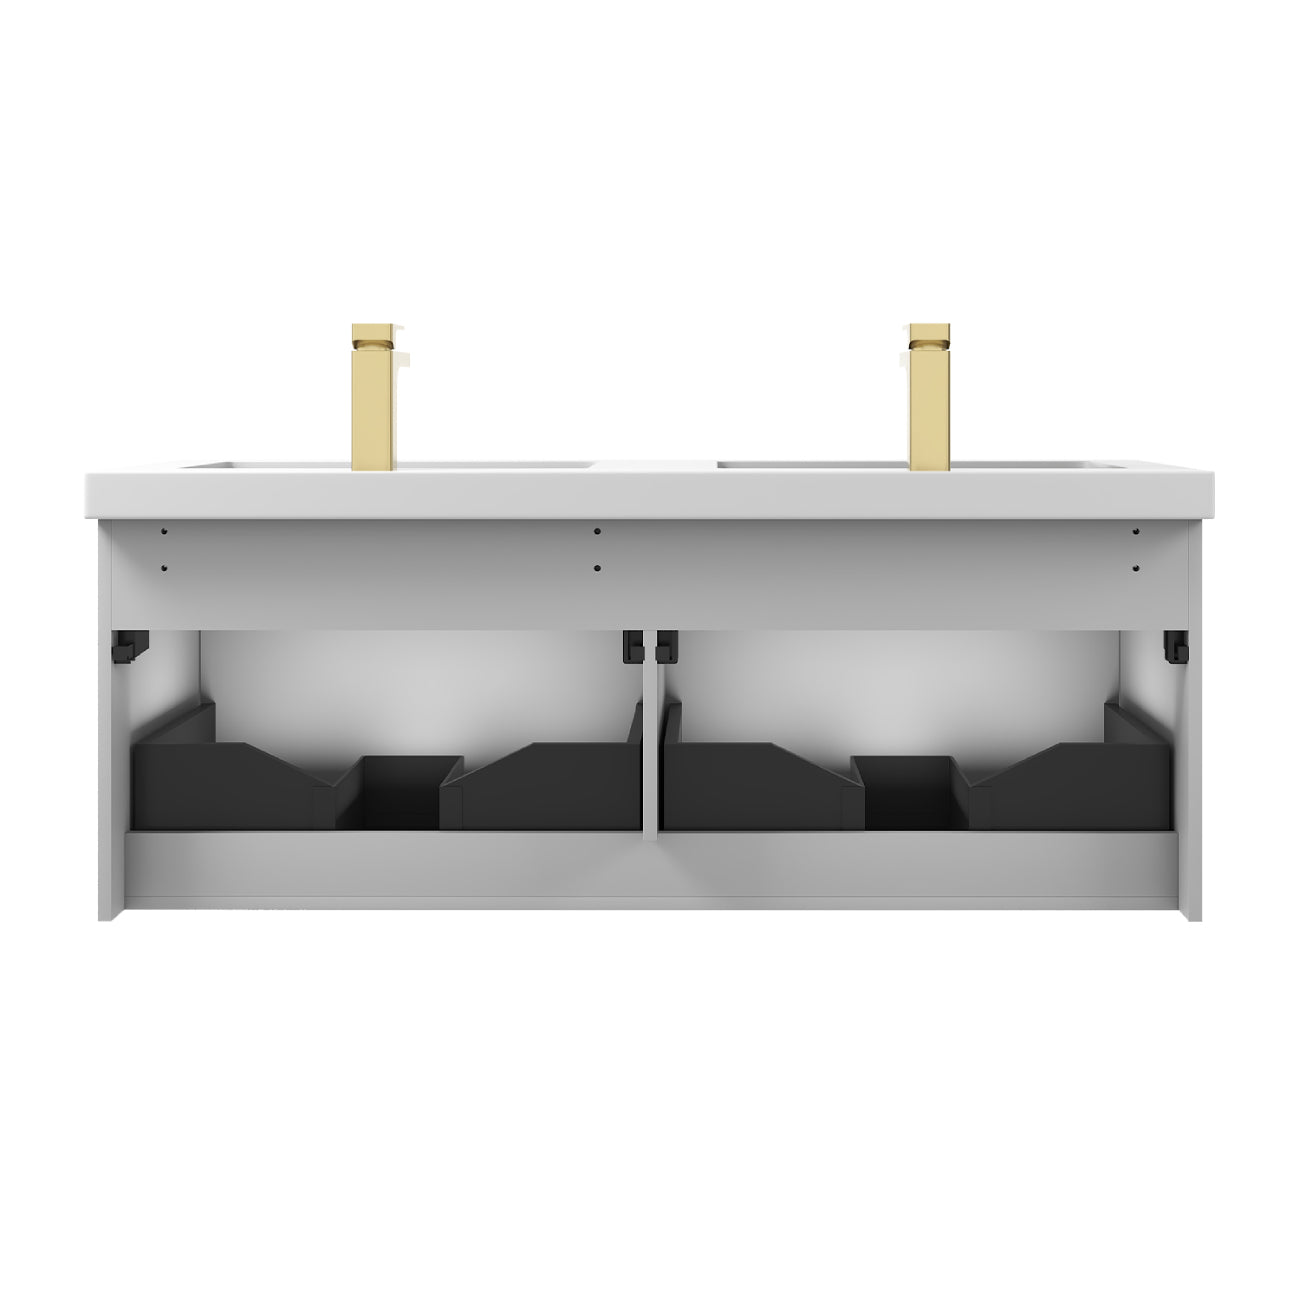 Positano 48" Floating Bathroom Vanity with Double Acrylic Sinks - Light Grey